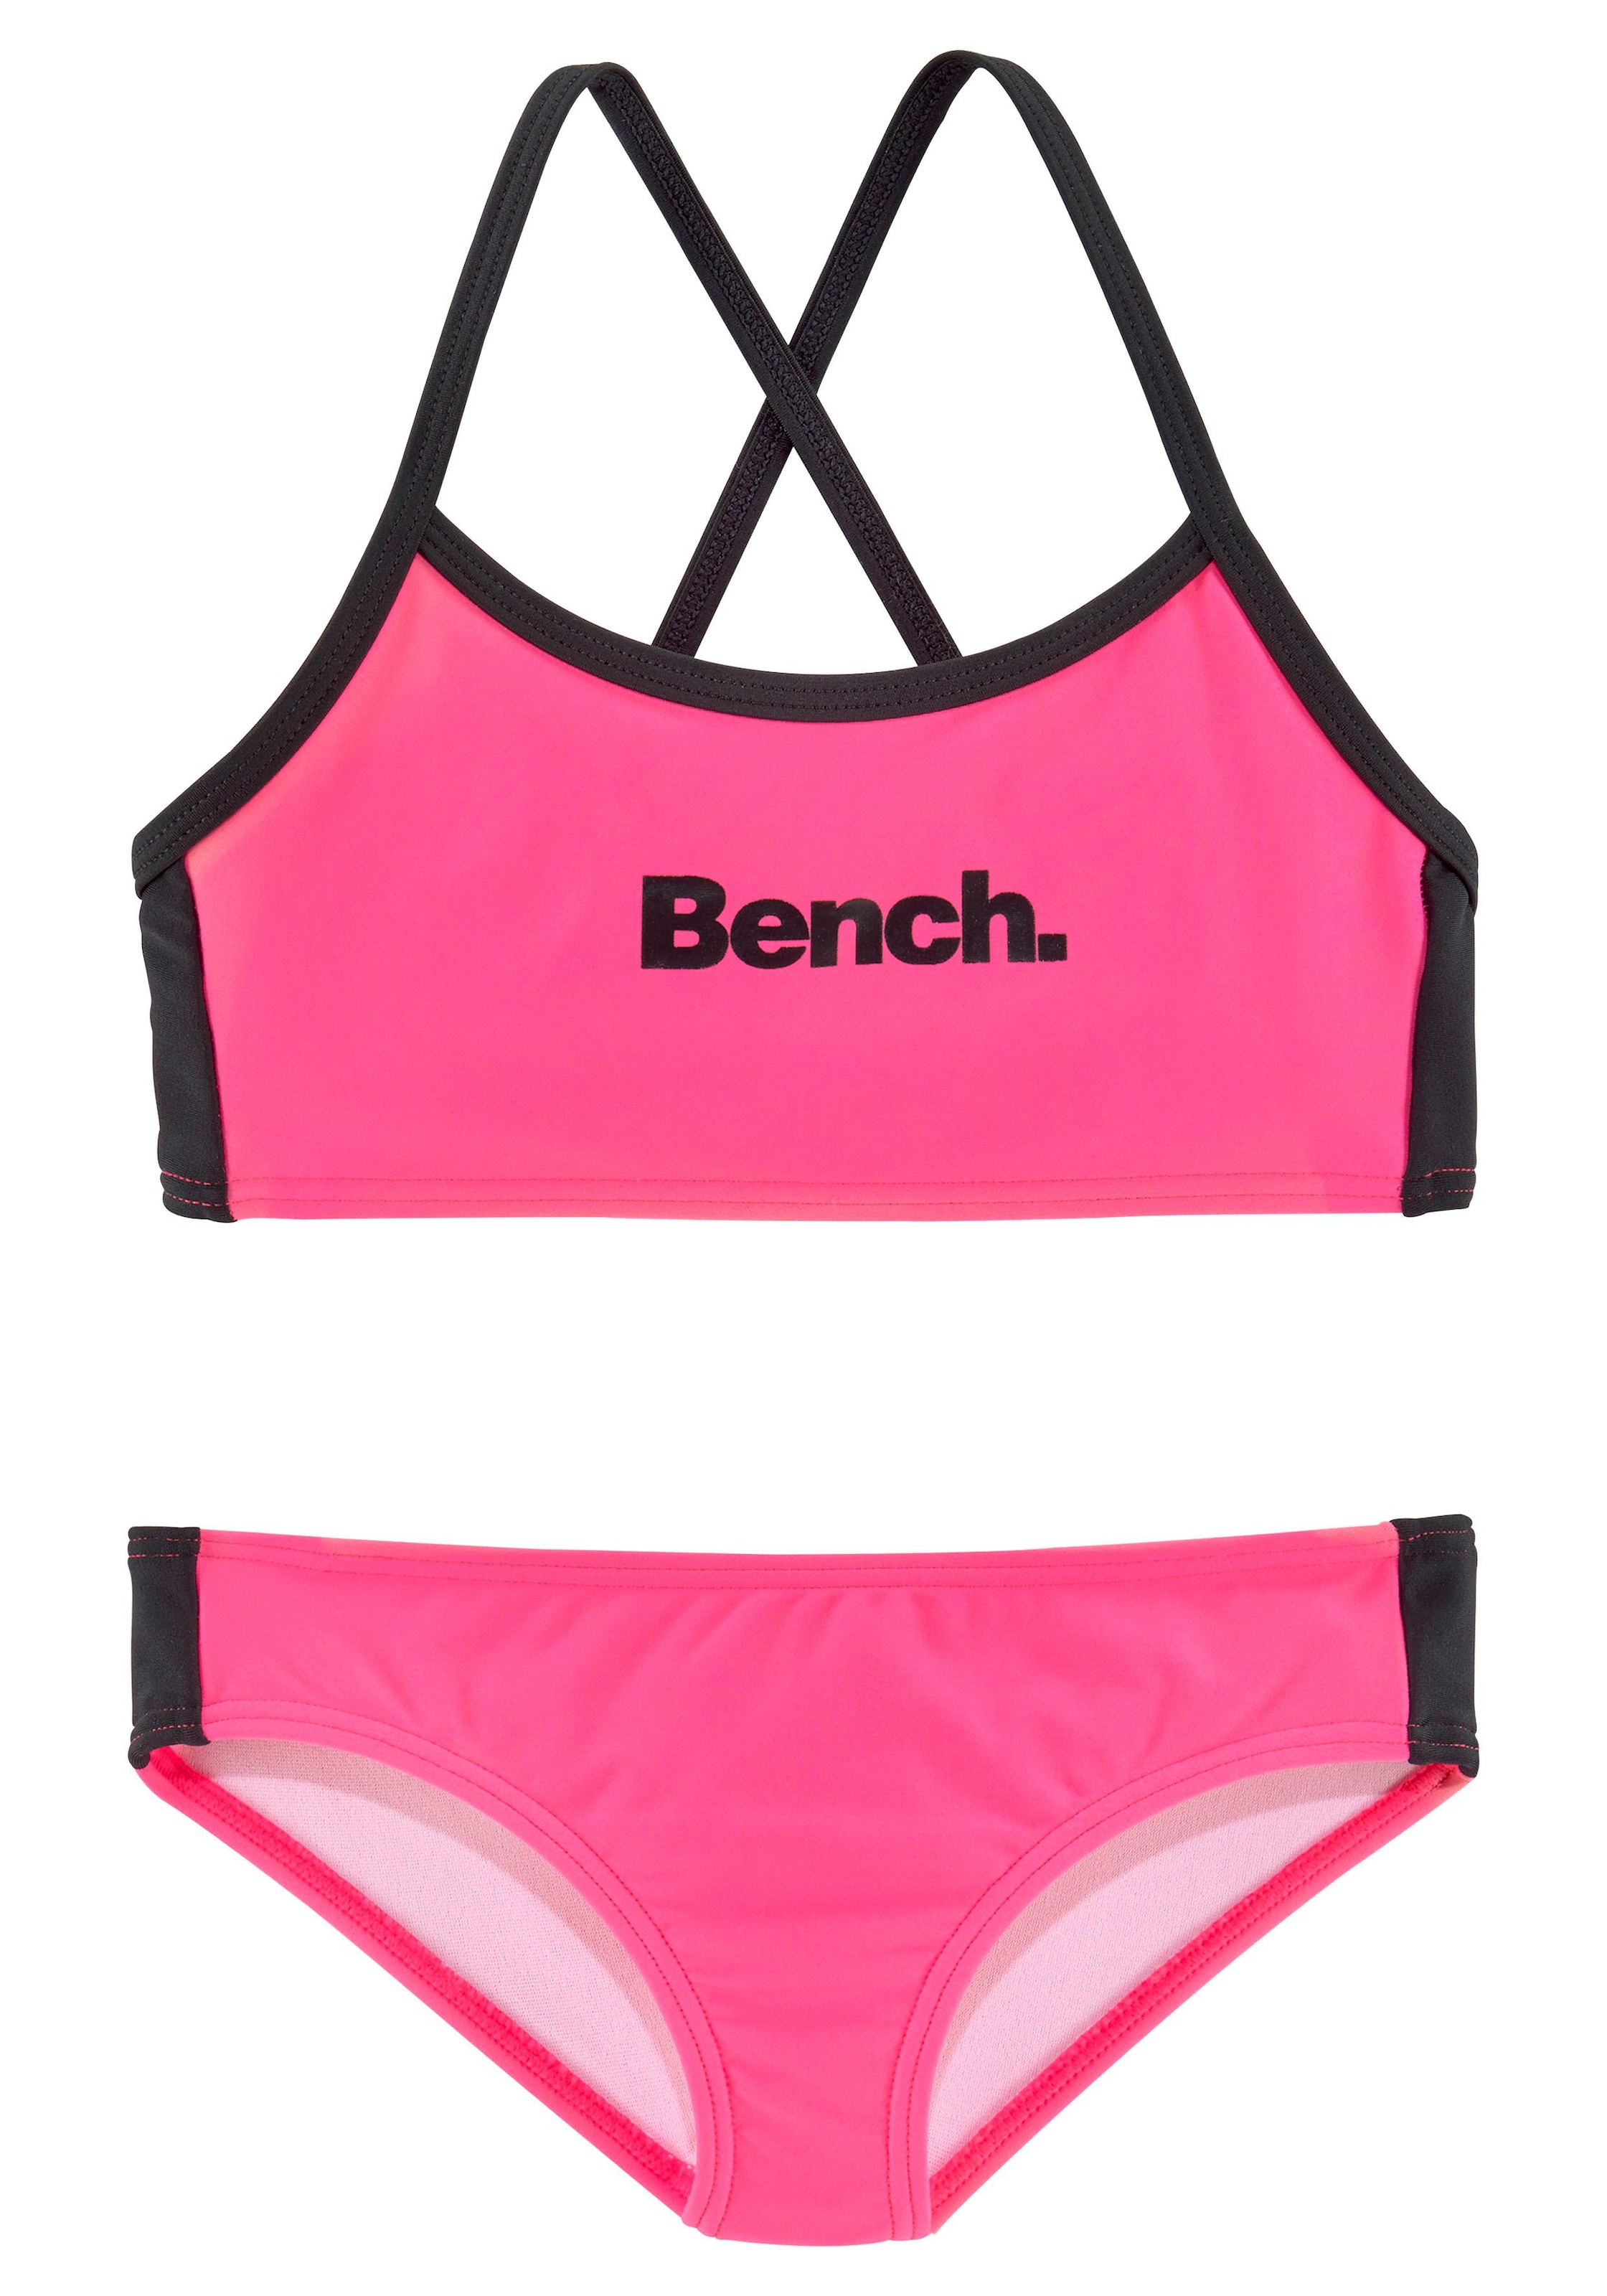 Bench. Bustier-Bikini mit regulierbaren kaufen Trägern online BAUR 